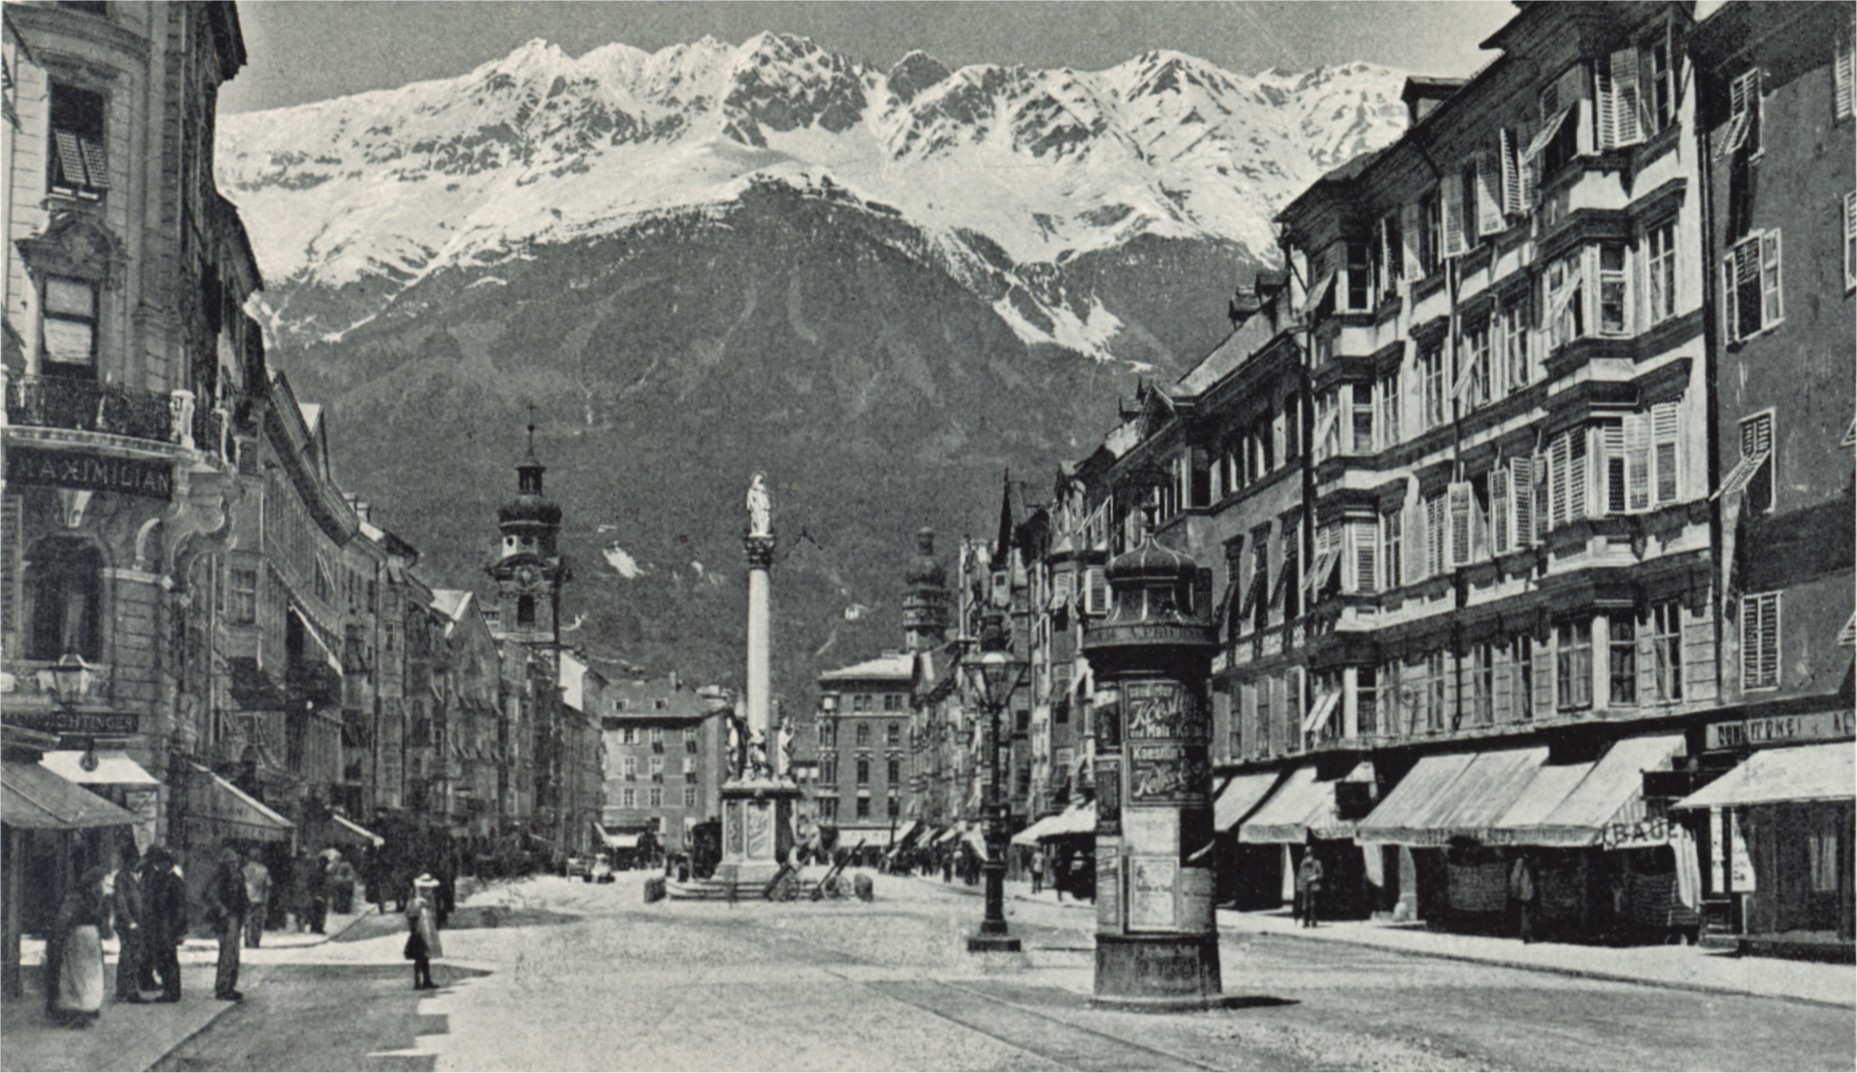 https://upload.wikimedia.org/wikipedia/commons/0/01/Maria-Theresien-Strasse_in_Innsbruck_um_1898.jpg